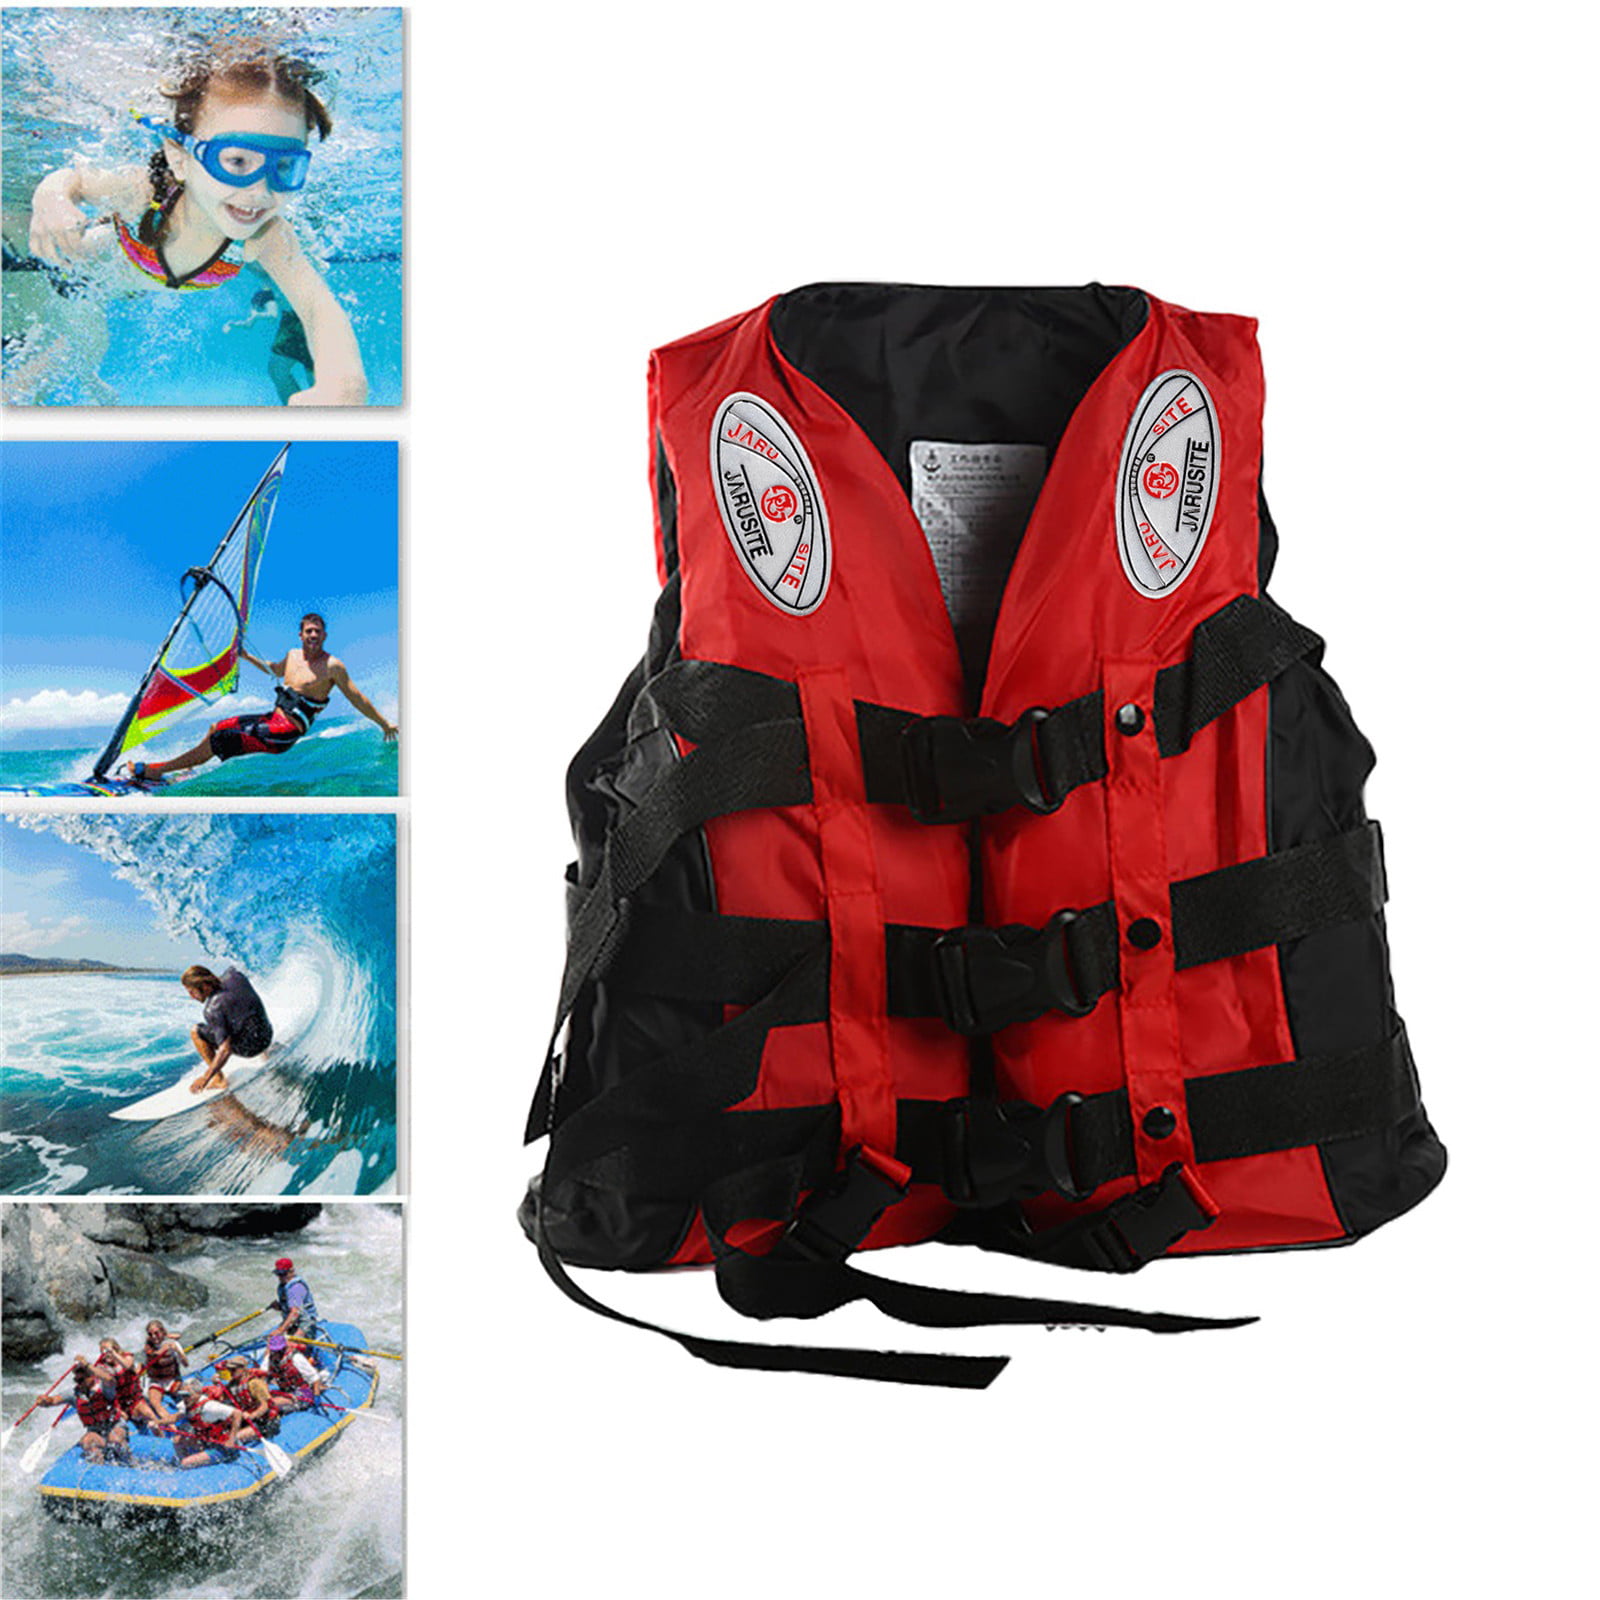 Hisea Adult Life Jacket Kayak Ski Buoyancy Aid Vest Sailing Fishing Watersport-Y 